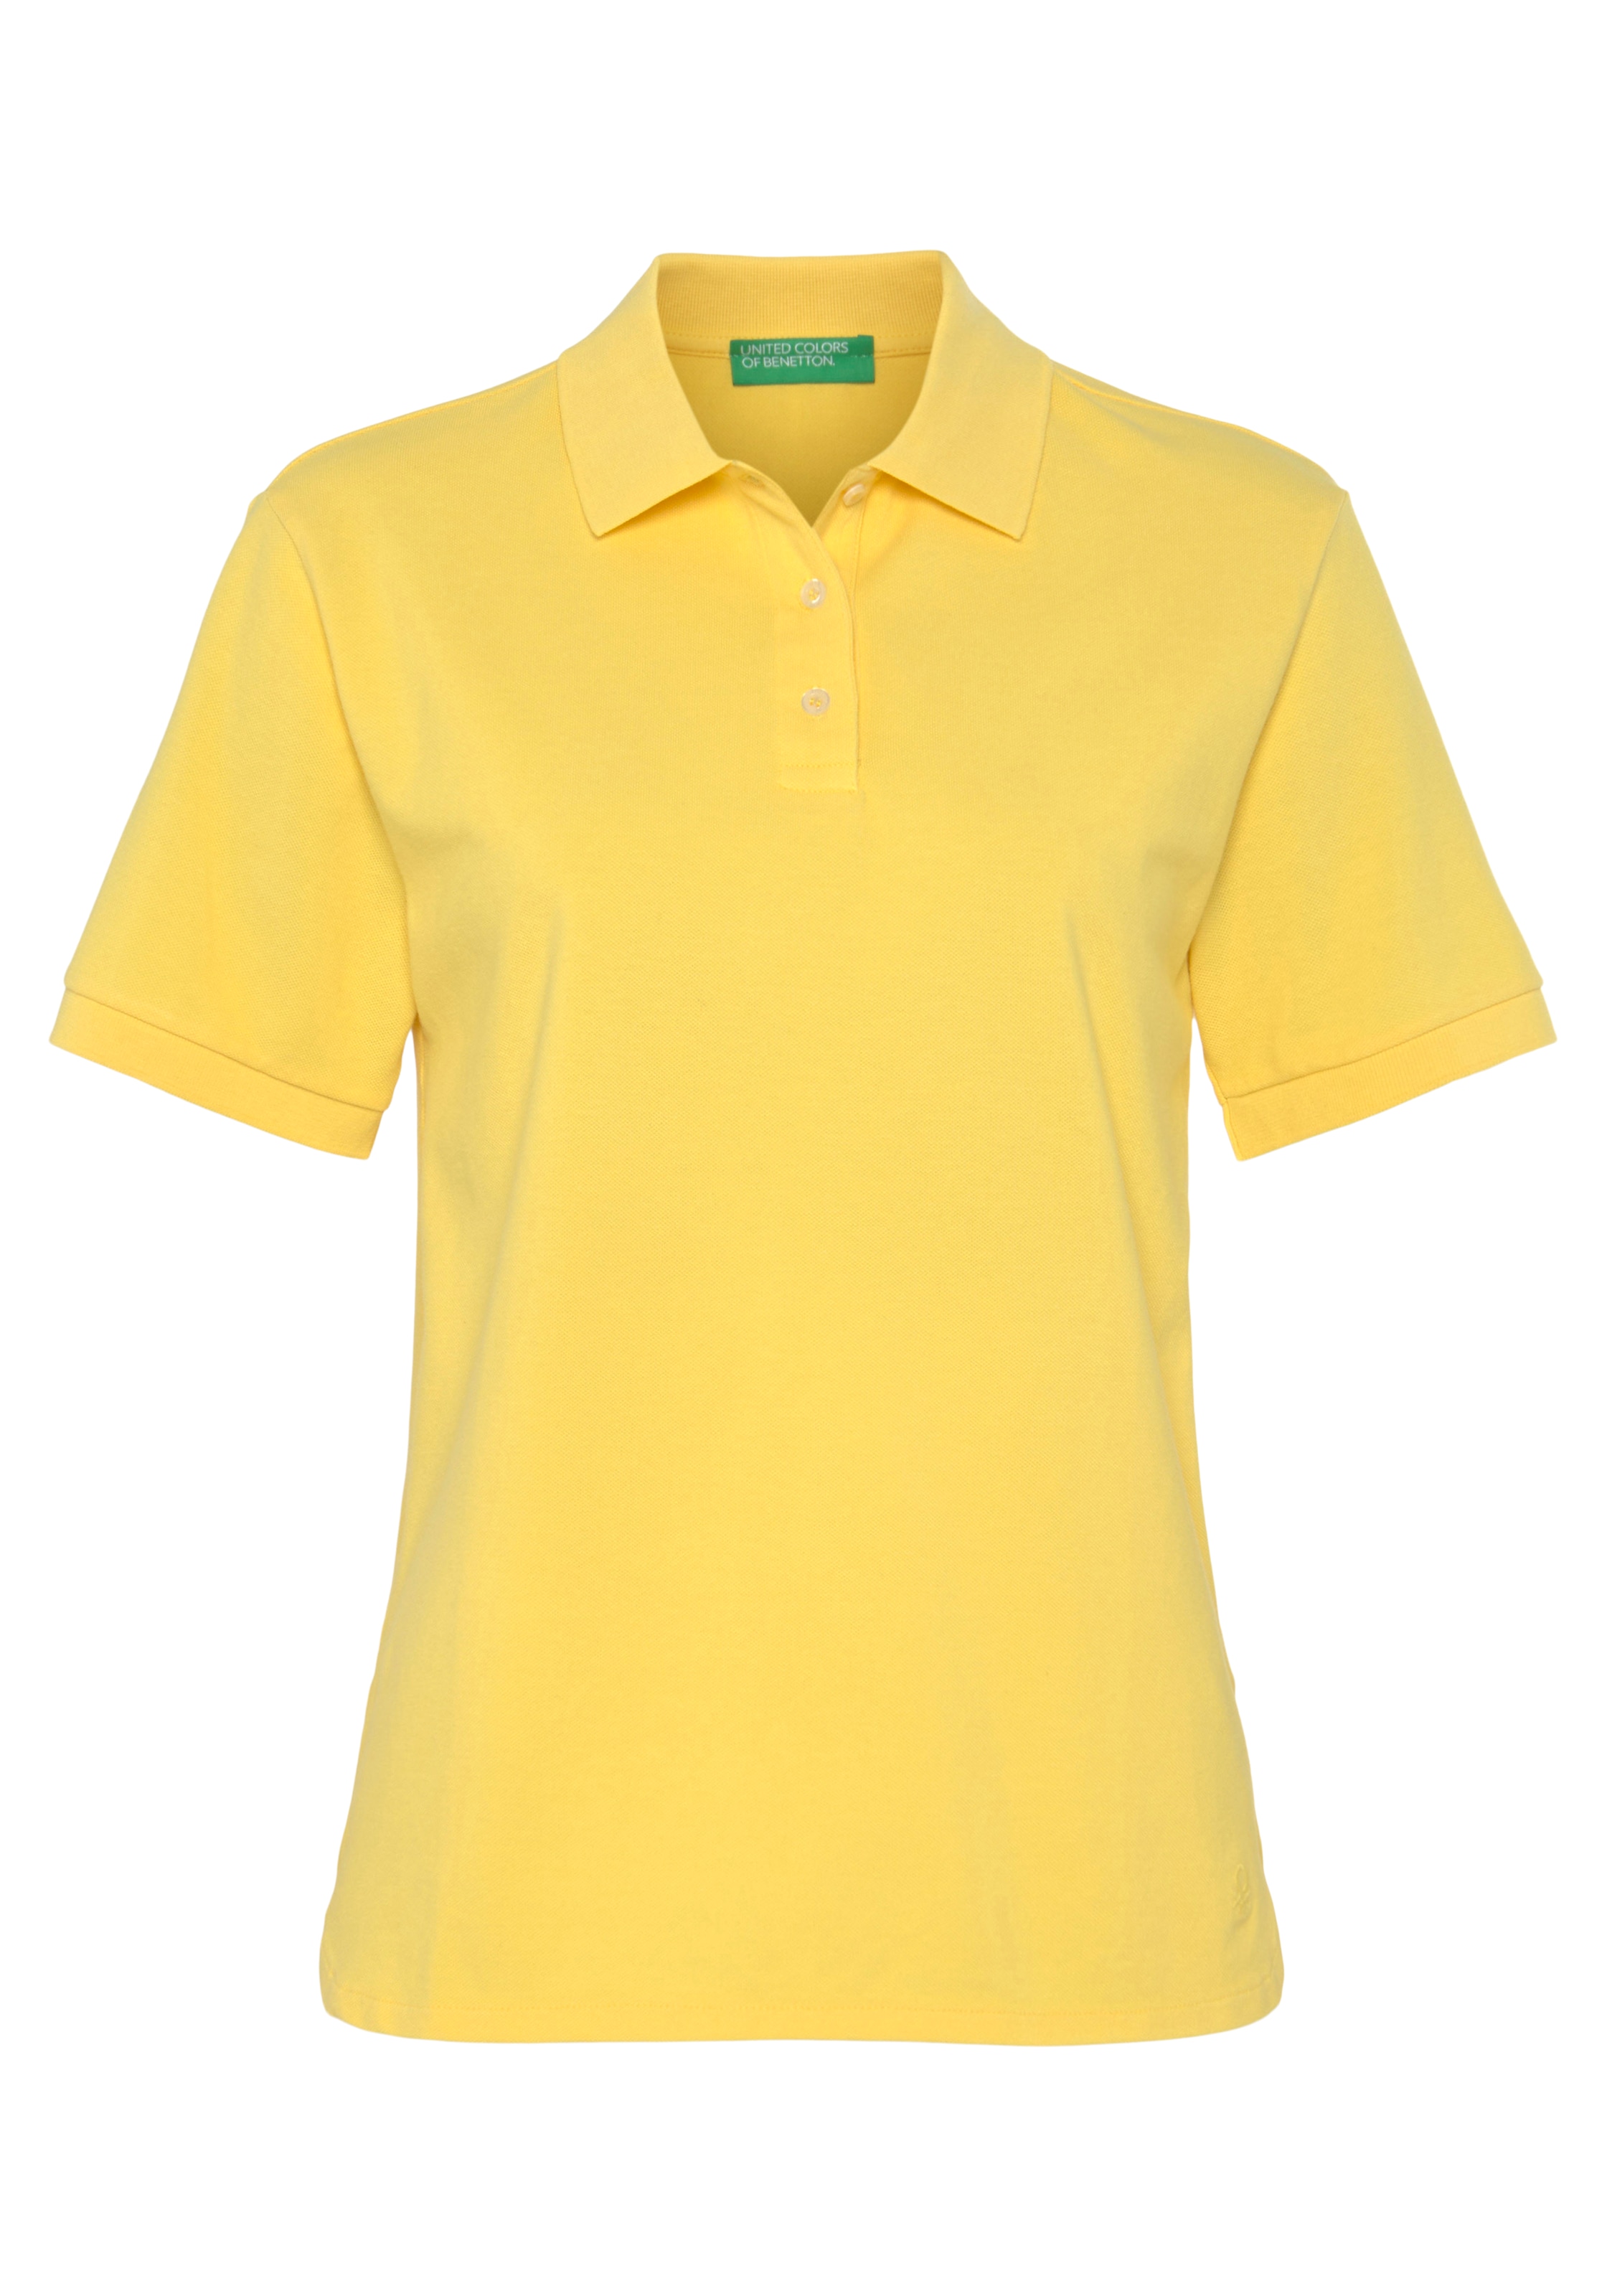 United Colors of Poloshirt, ♕ bei Benetton perlmuttfarbenen mit Knöpfen